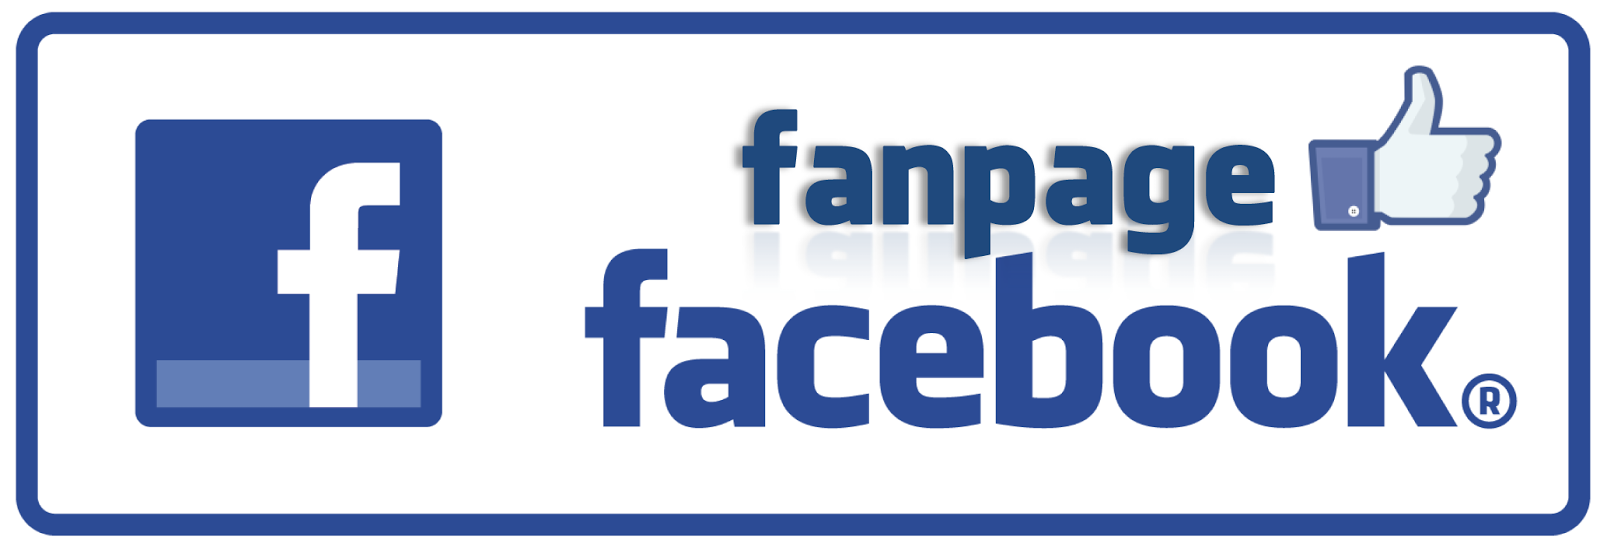 Fanpage facebook